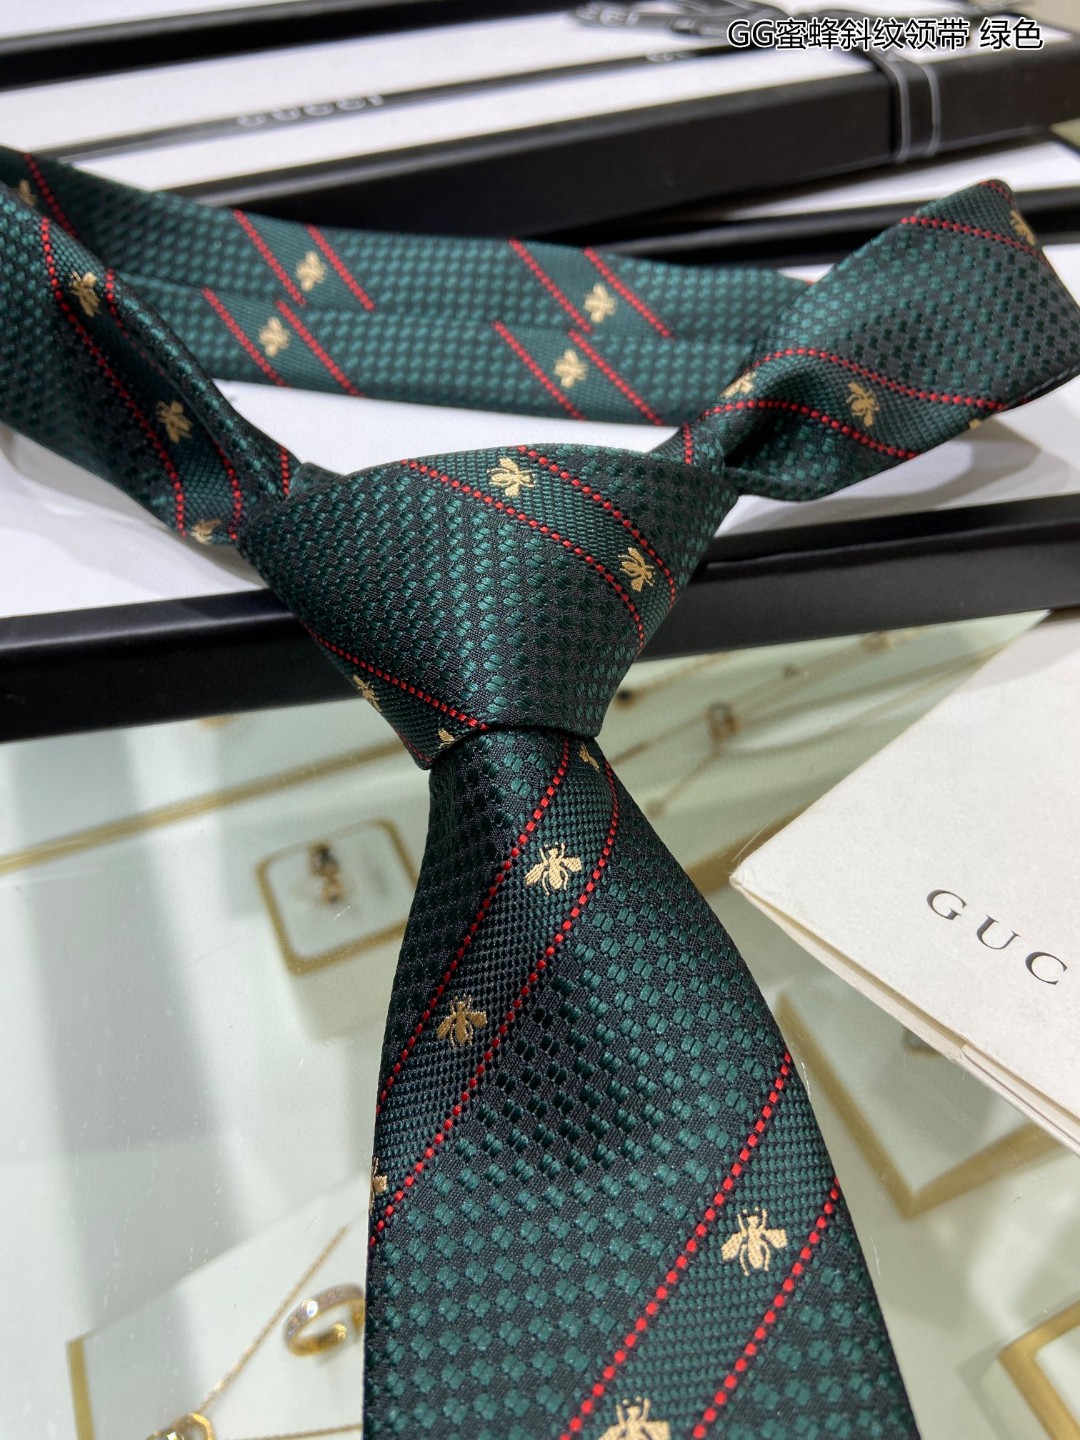 上新G家男士领带系列GG蜜蜂斜纹领带稀有展现精湛手工与时尚优雅的理想选择这款领带将标志性的主题动物小蜜蜂